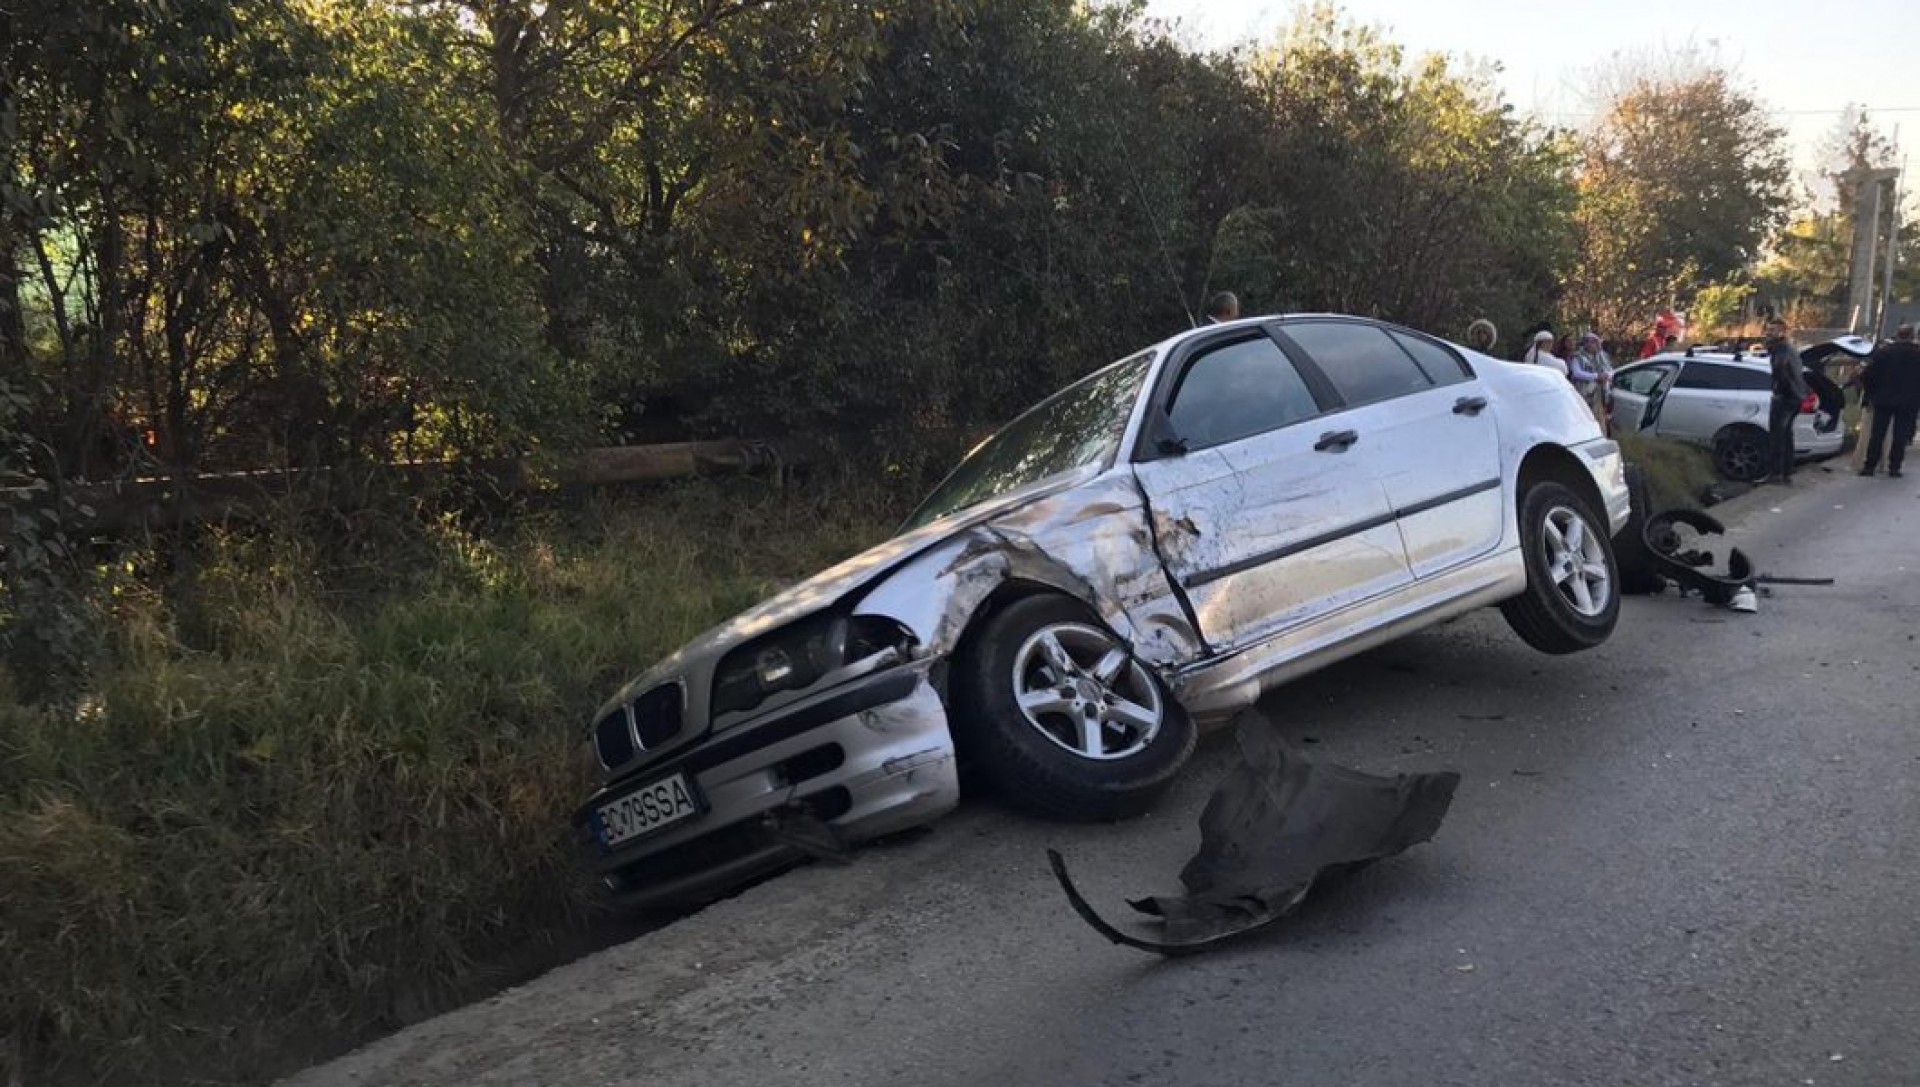 Cele mai grave accidente din 2019 - PolitiaRutiera.ro